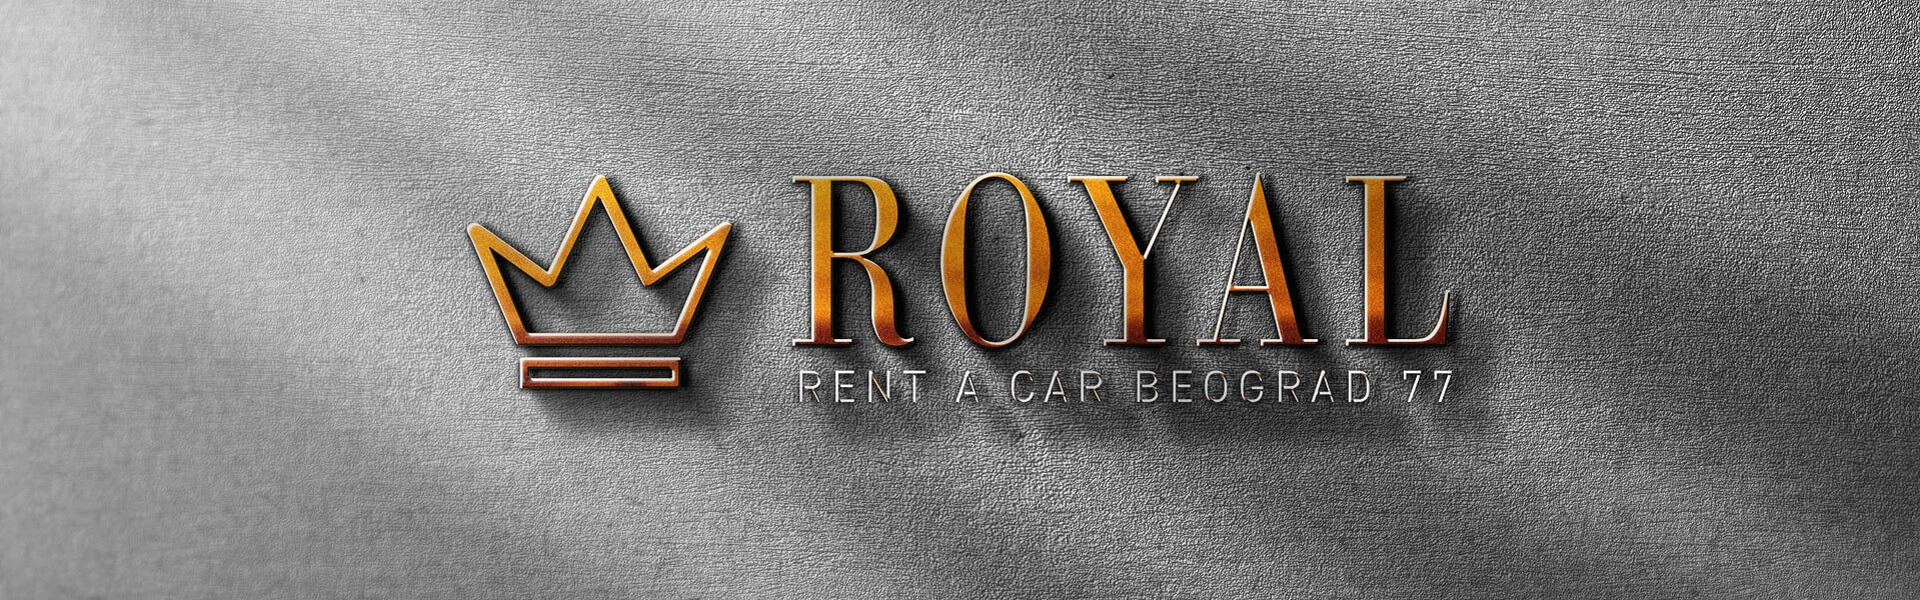 Rent a car Belgrade  | Rent a Car Belgrade Royal